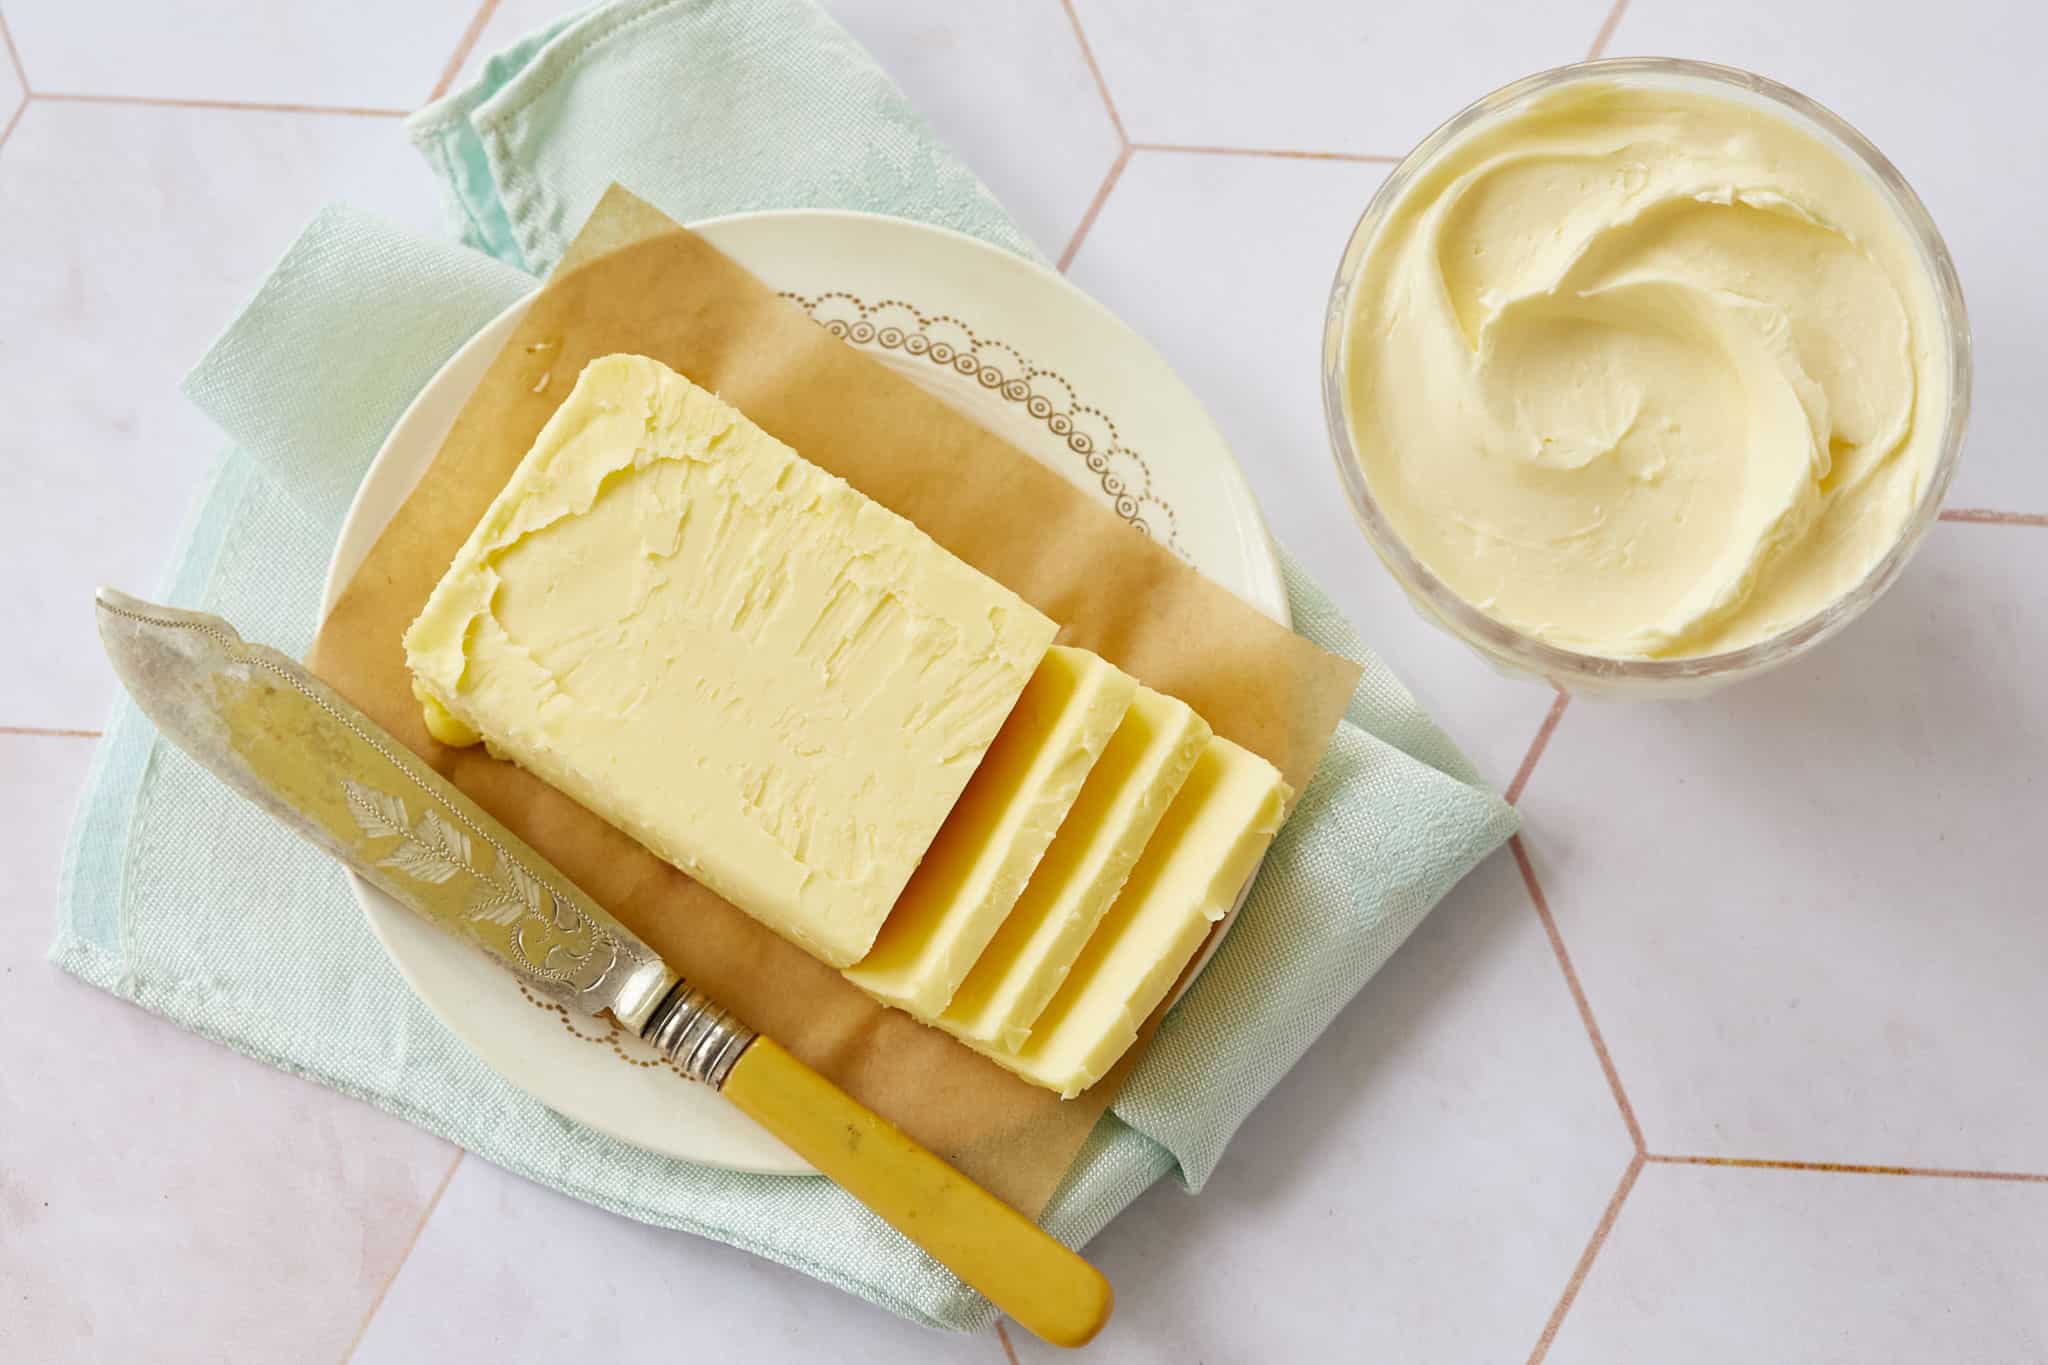 Margarine vs. Butter: What's Better?